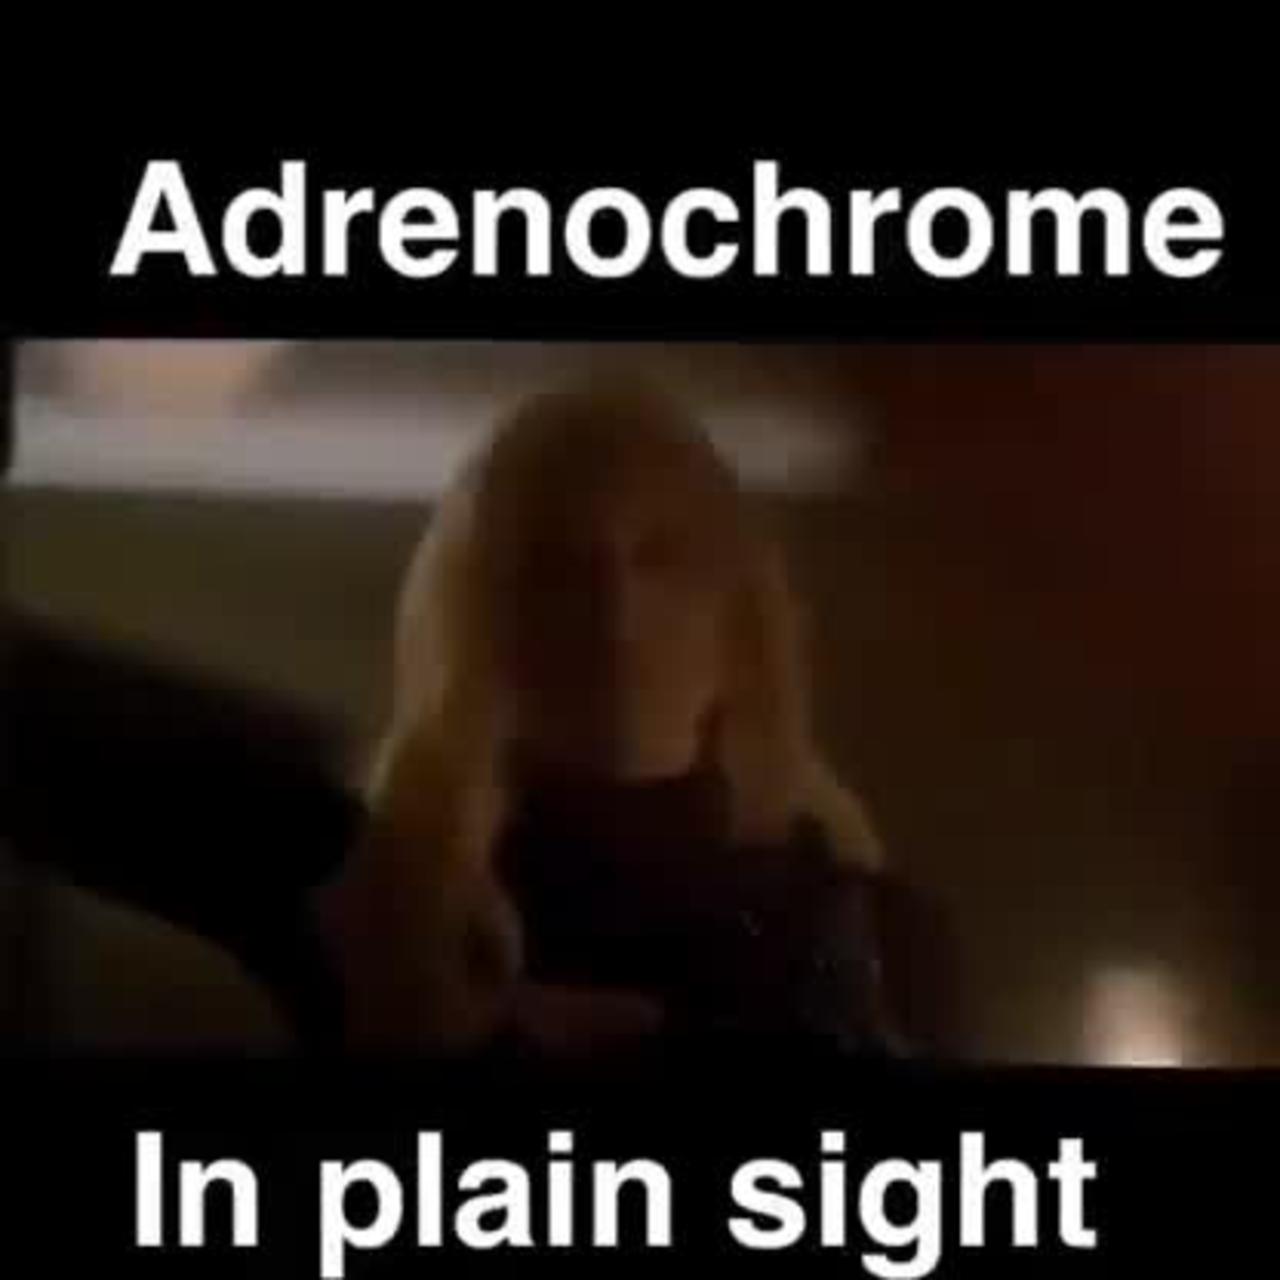 Lady Gaga & Addenochrome- American Horror Story 2015